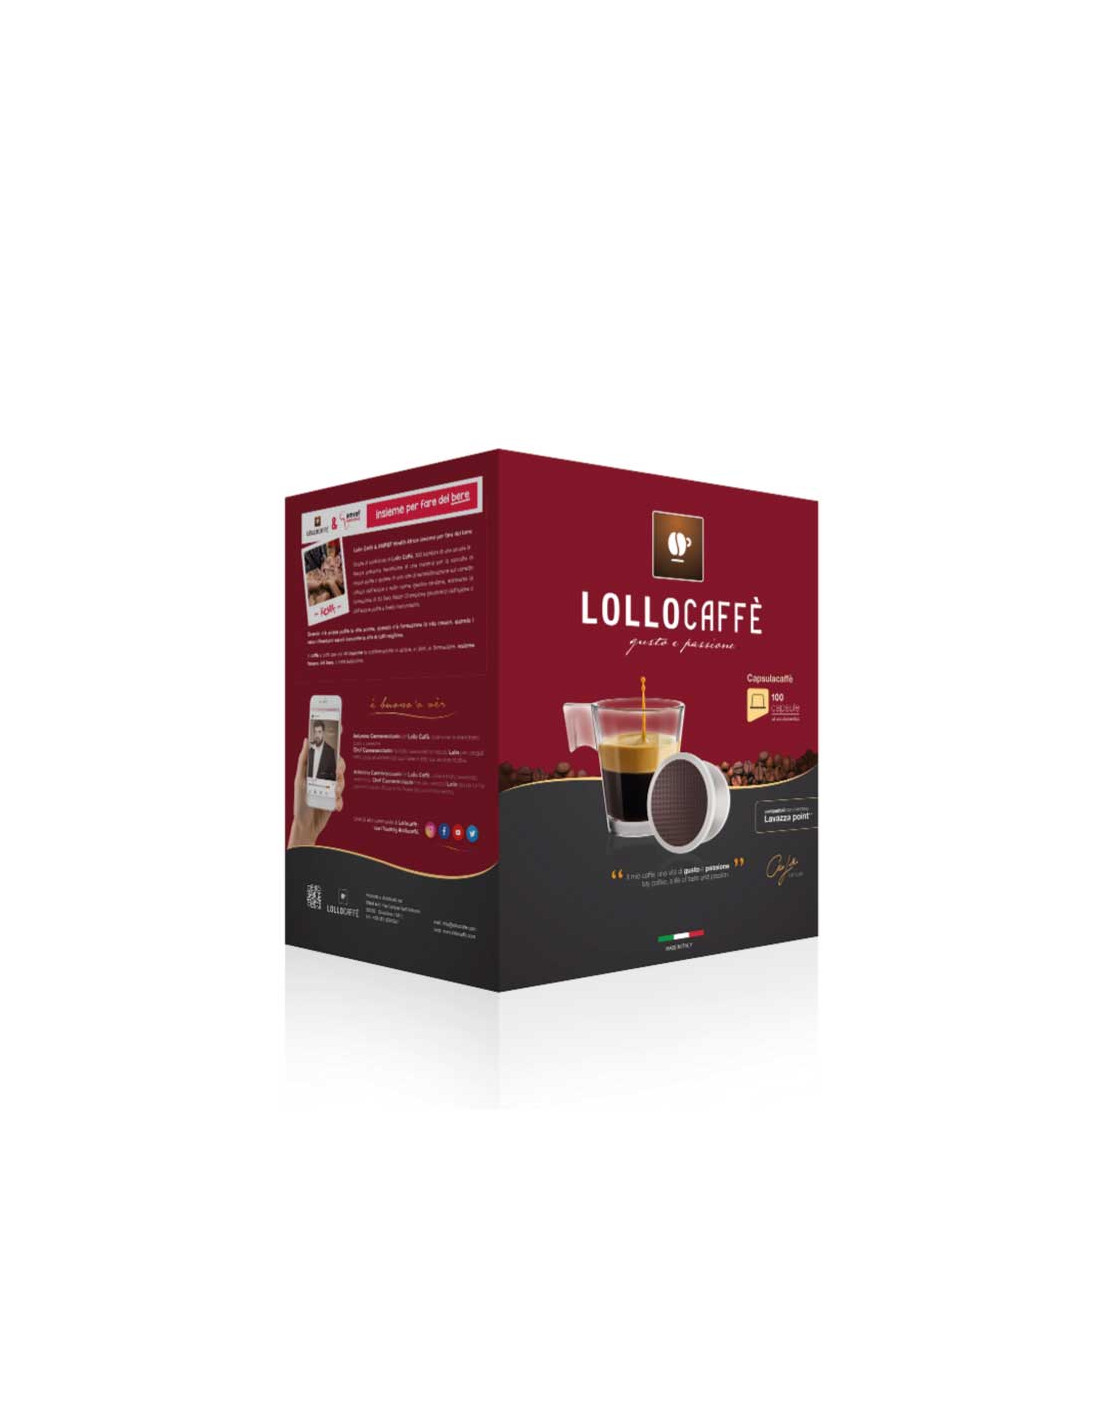 Macchine Lollo Caffe Compatibili Lavazza Espresso Point Bella Point Nero